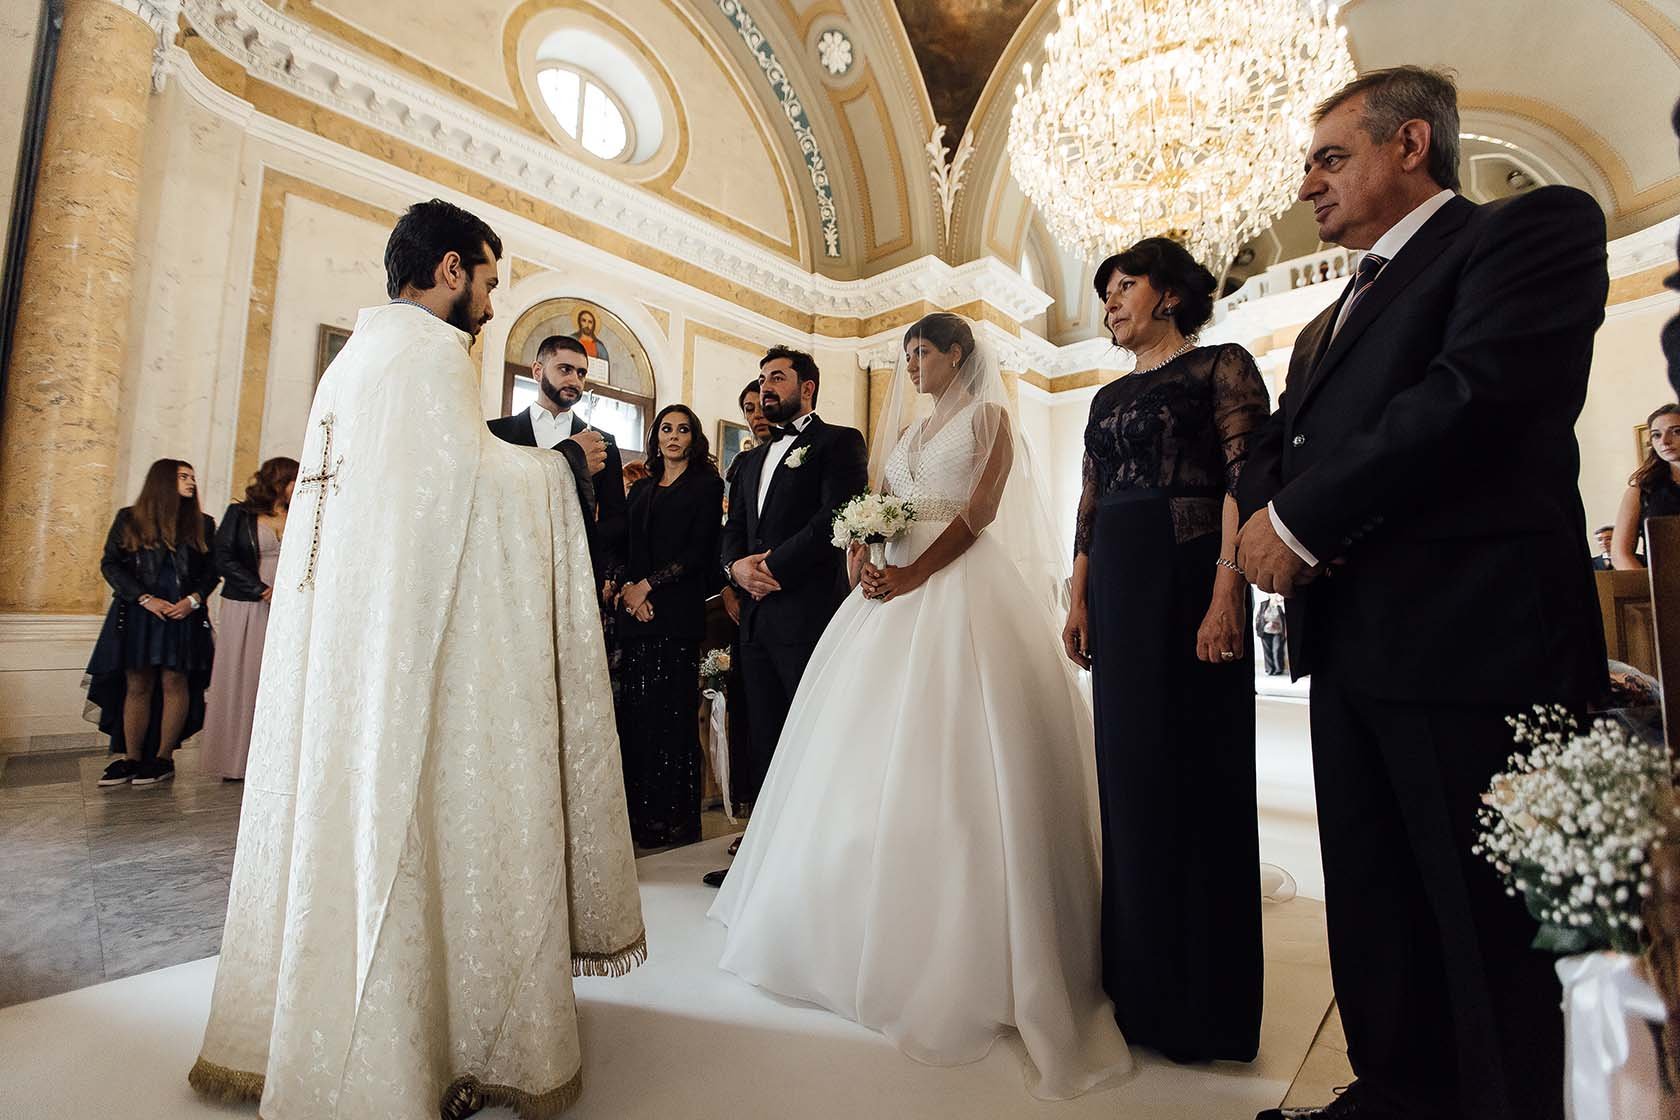 Армянская свадьба - народные традиции и обычаи